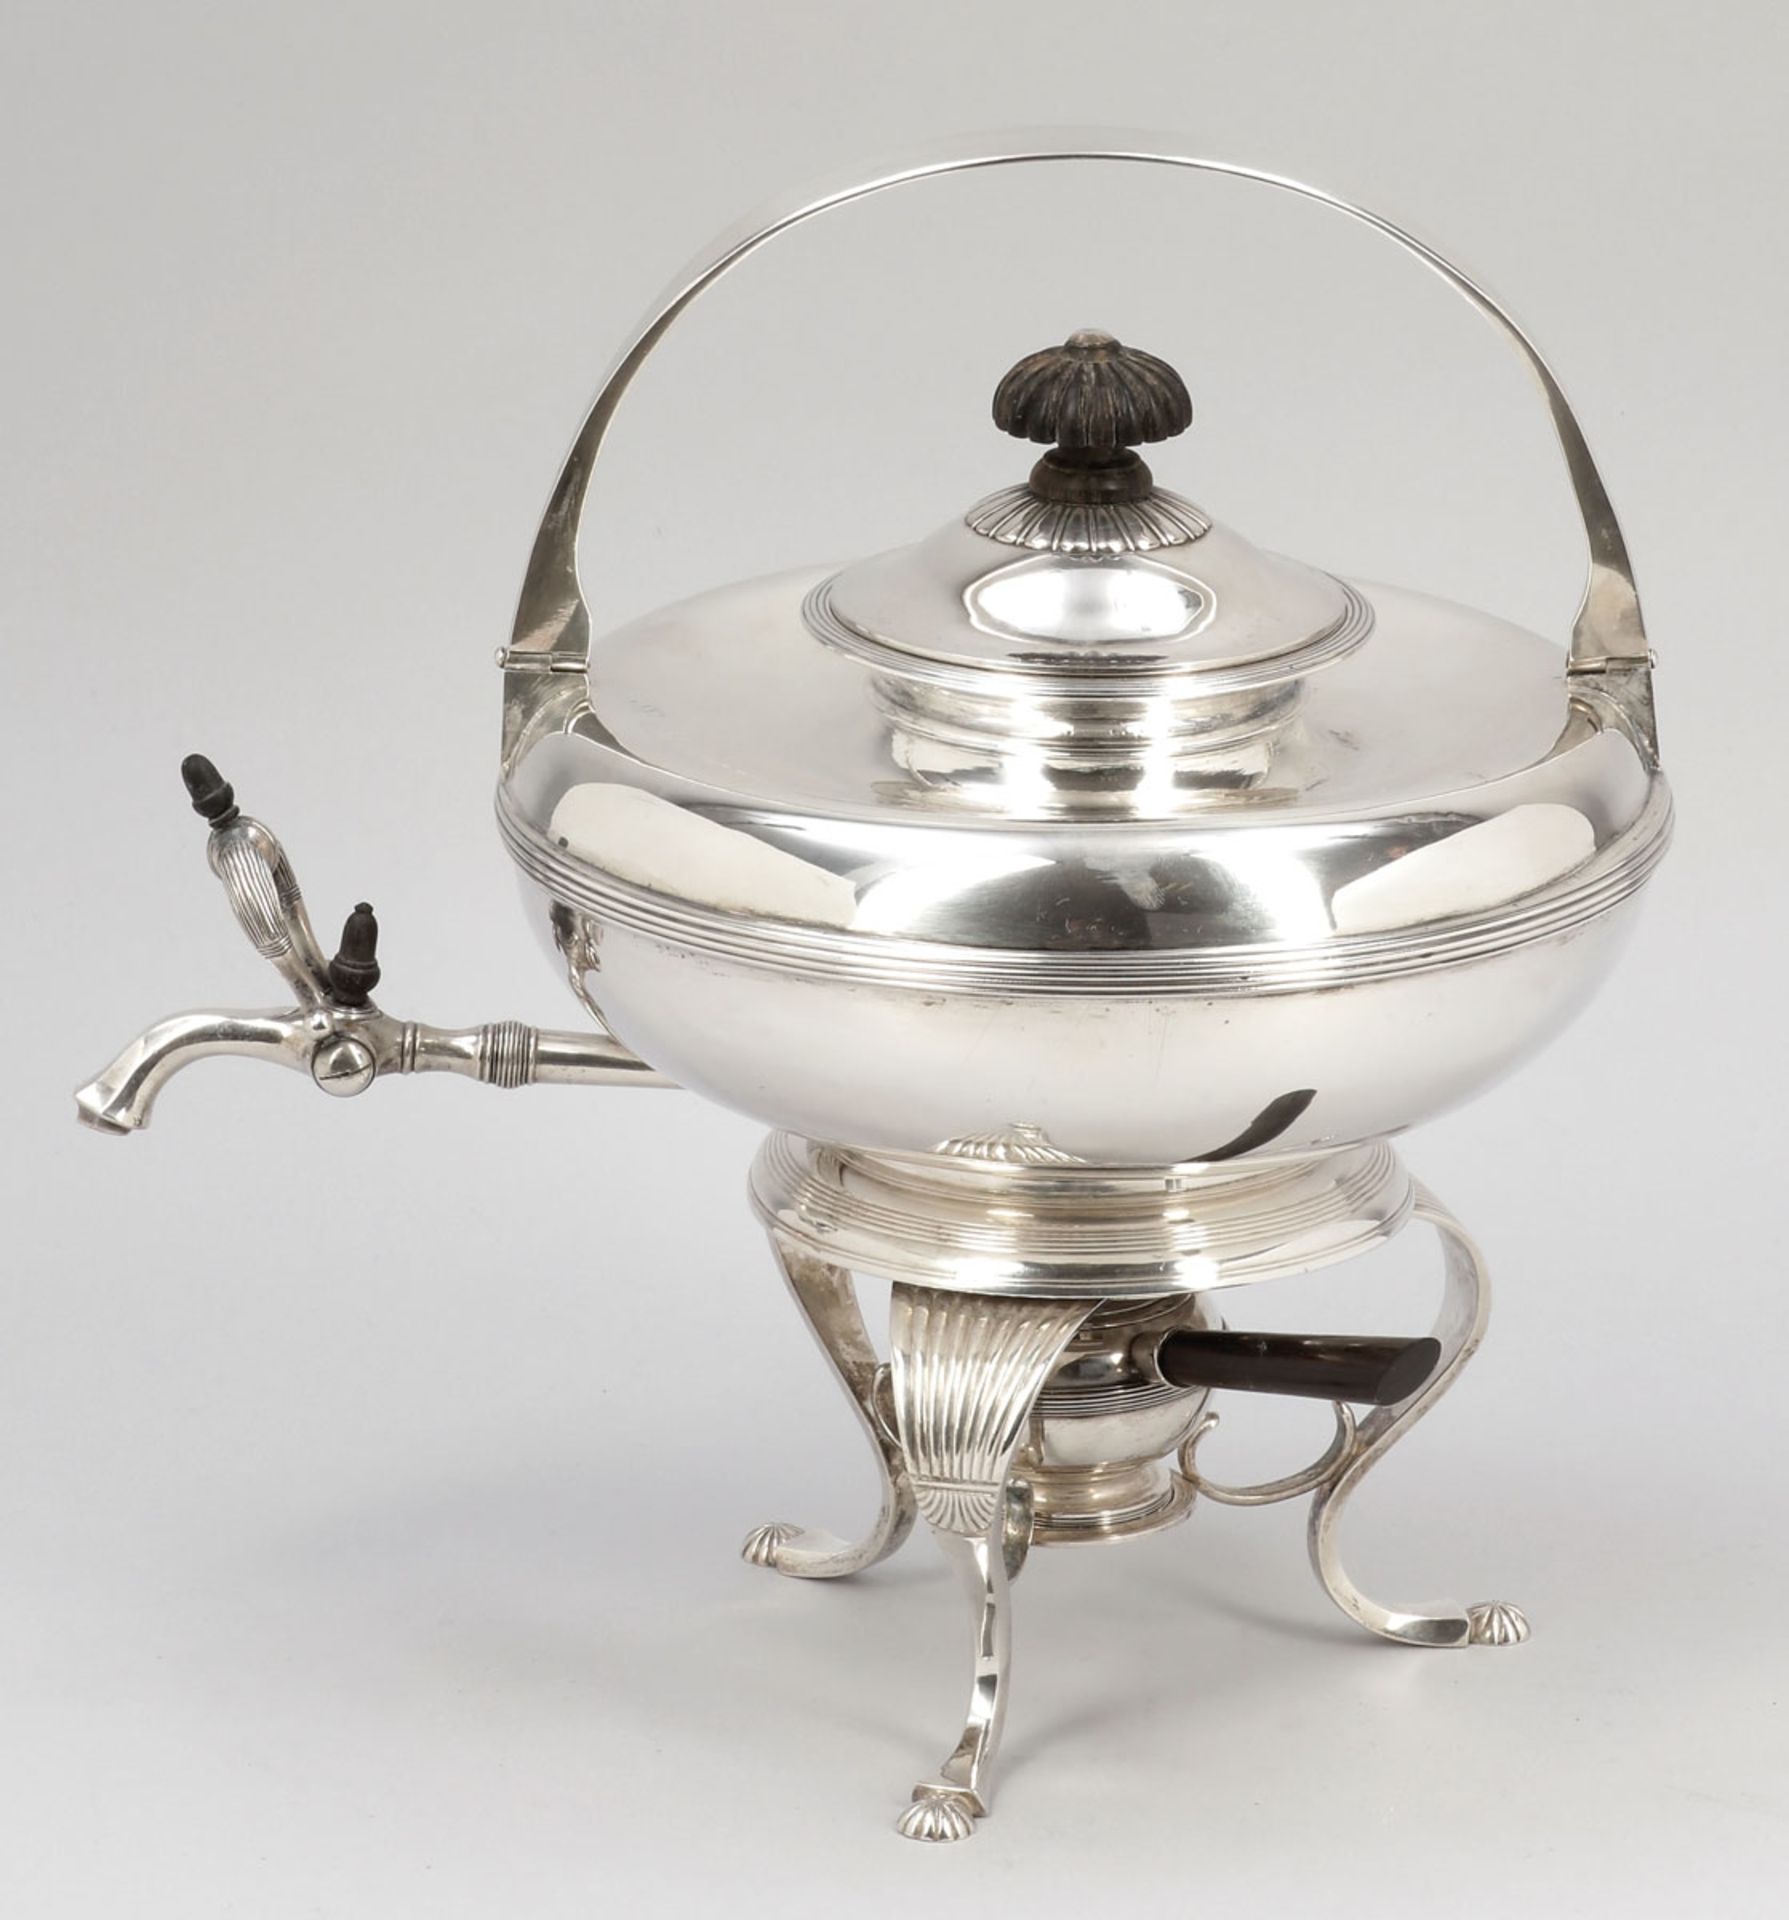 Seltene Teemaschine auf Rechaud / Tea PotSchüller/Dresden, um 1800/10. 750er Silber. Punzen: